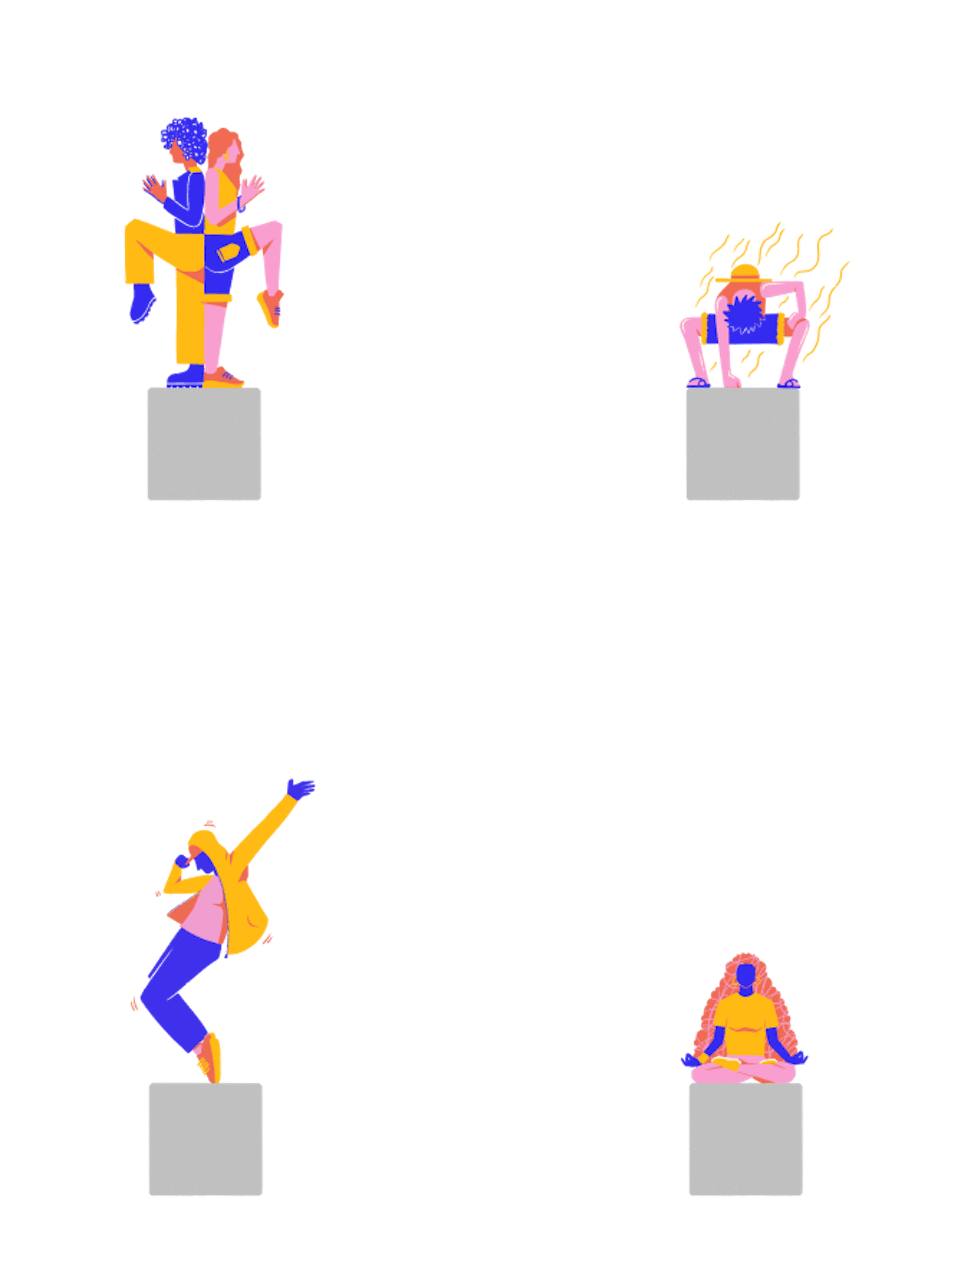 Des illustrations de personnages montrant comment utiliser les blocs bétons de l'espace Alice Milliat en prenant des poses originales.